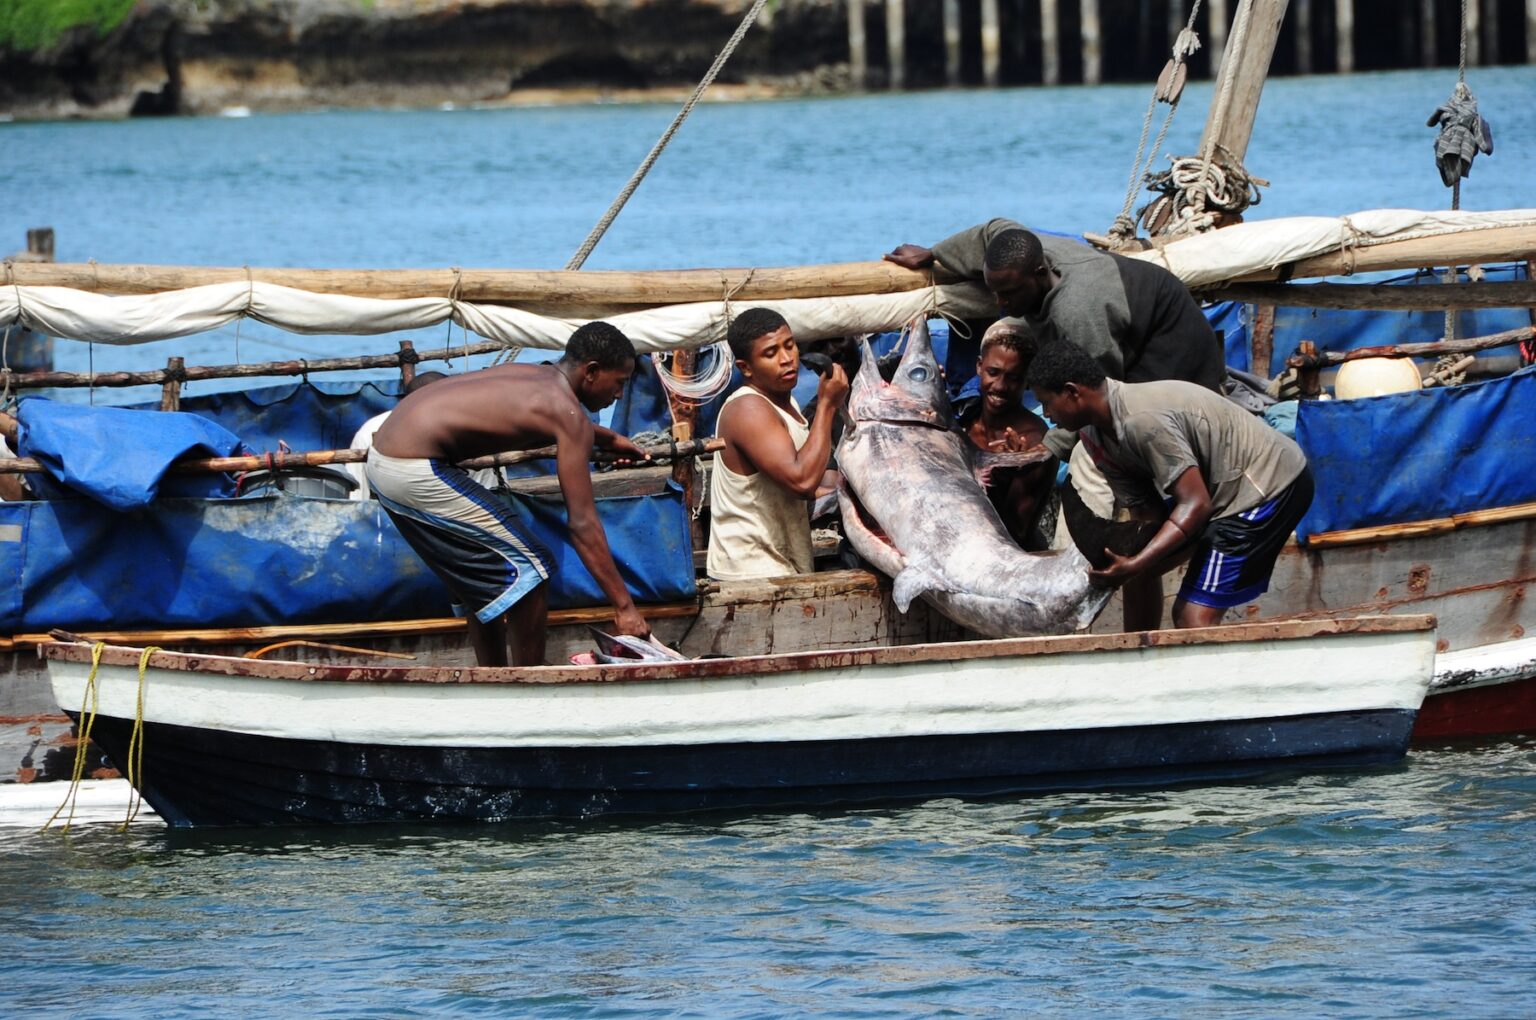 Lake Victoria Lake Tanganyika Indian Ocean Fish Market in Dar es Salaam